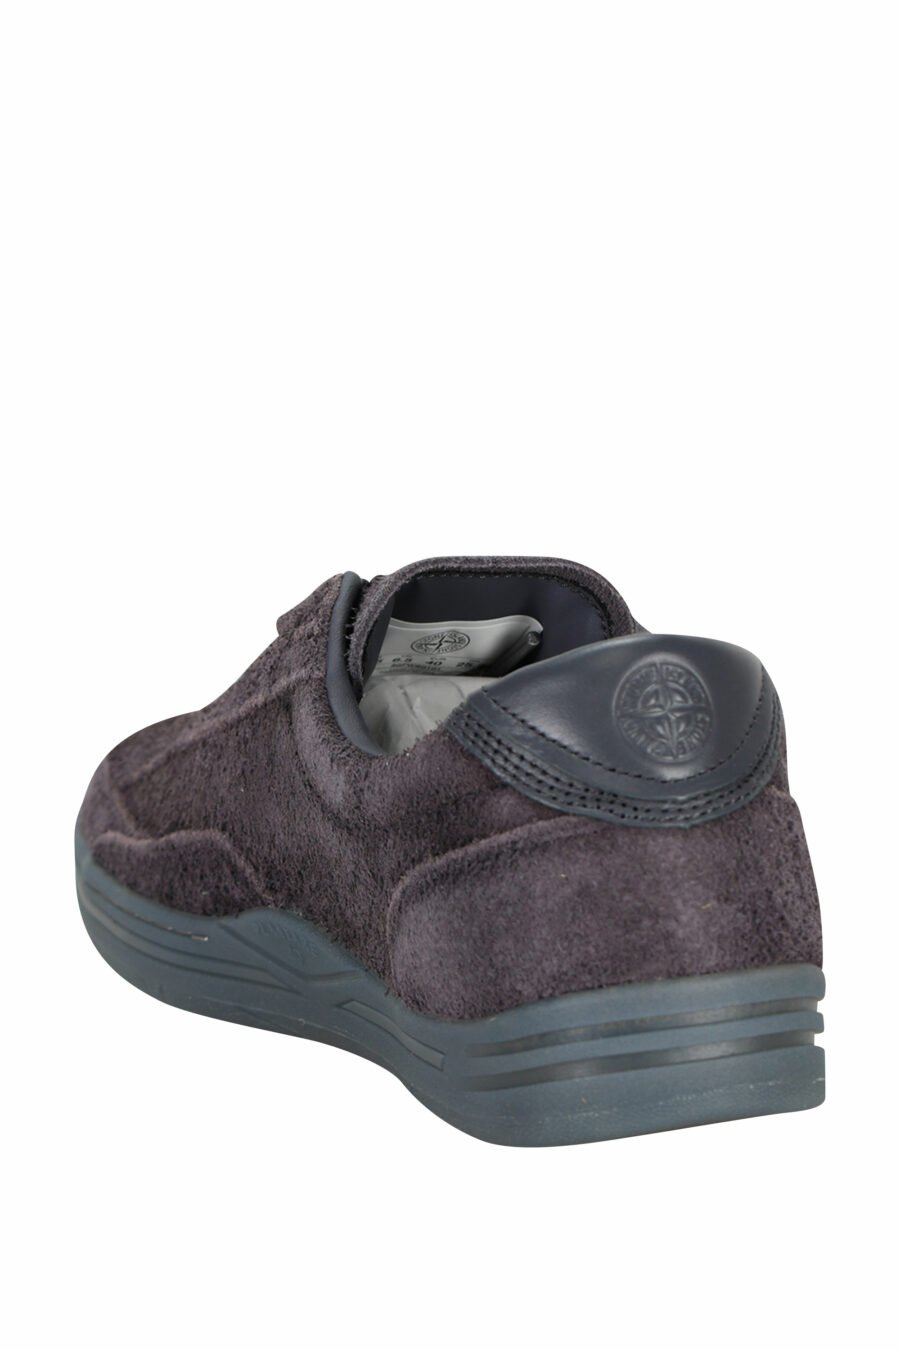 Zapatillas azul grisáceo con minilogo y suela gris - 8052572937910 3